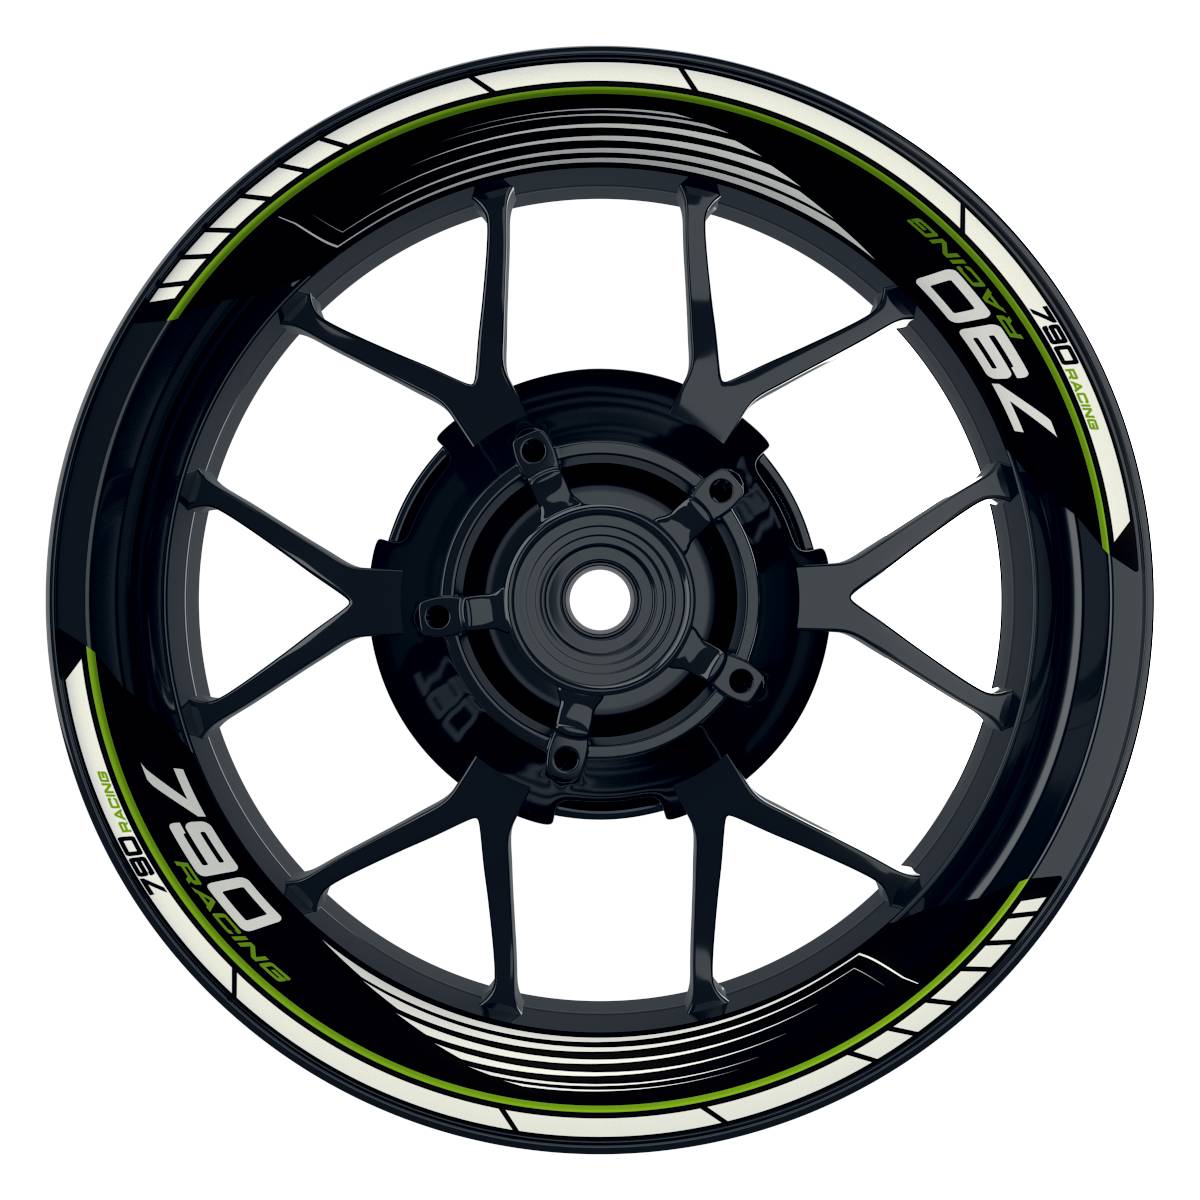 KTM Racing 790 SAW schwarz gruen Frontansicht